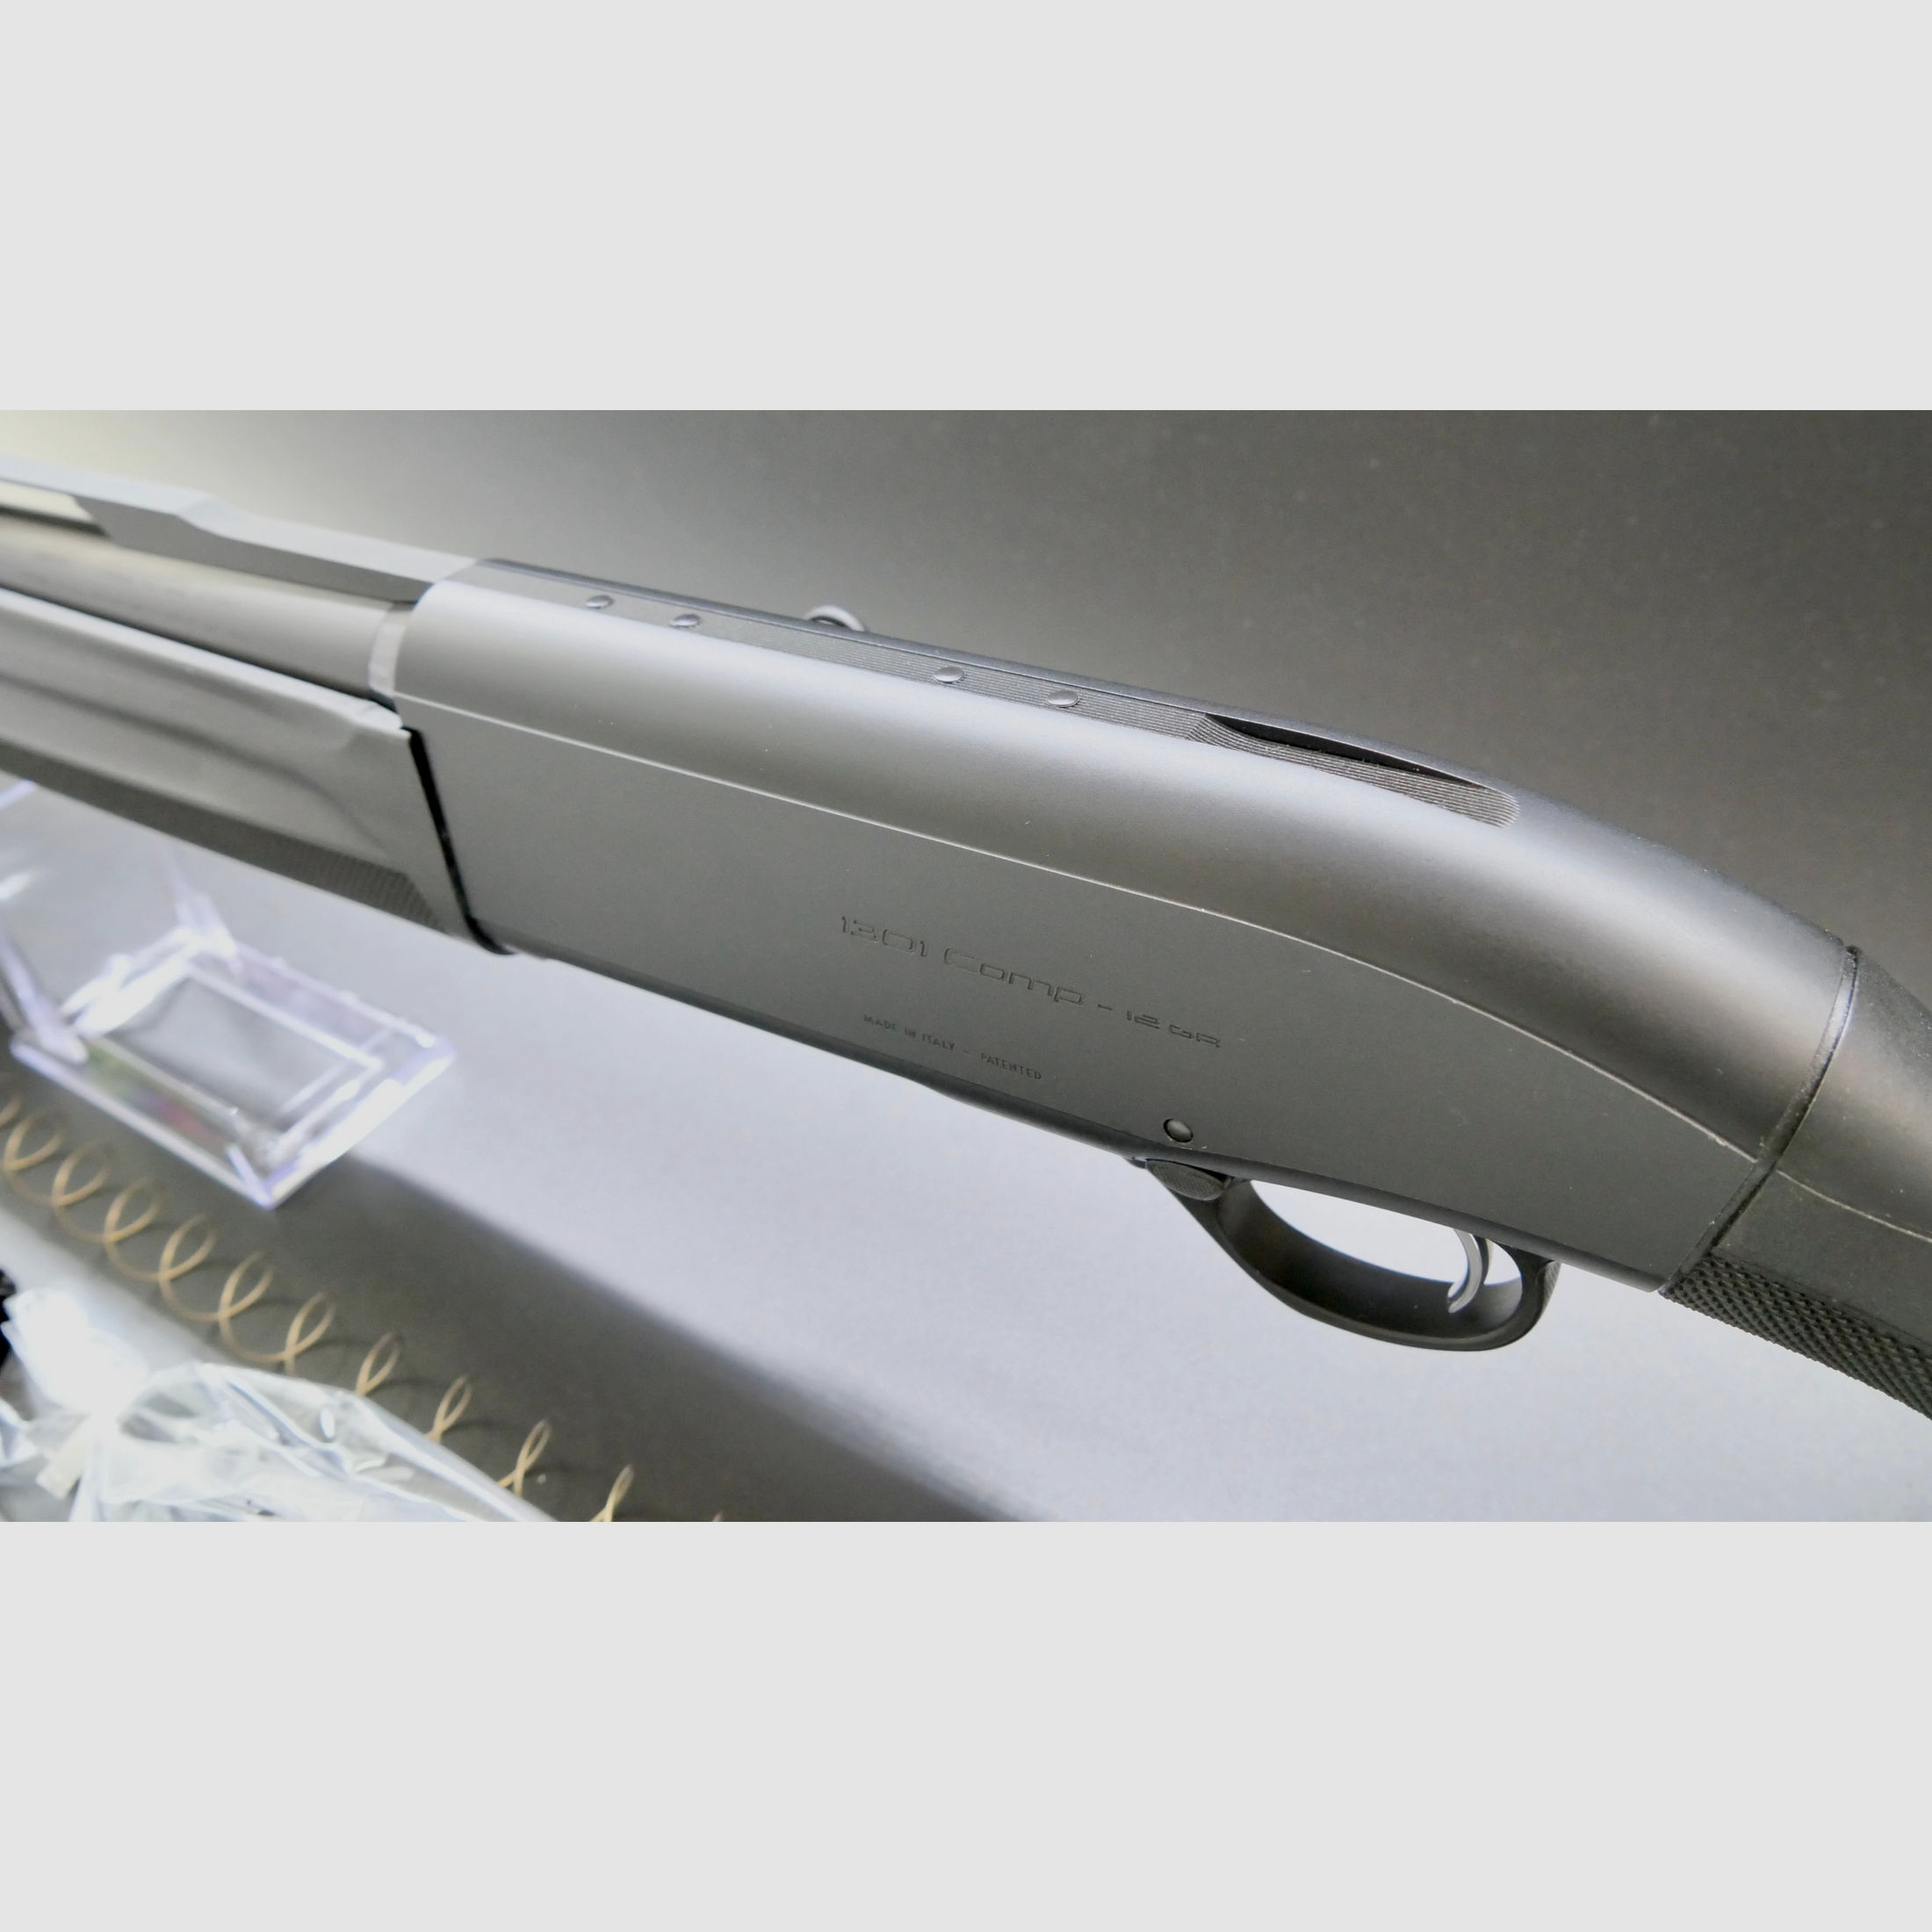 Beretta Selbstladeflinte 1301 Competition S 12/76 Lauflänge 610mm mit Magazinverlängerung